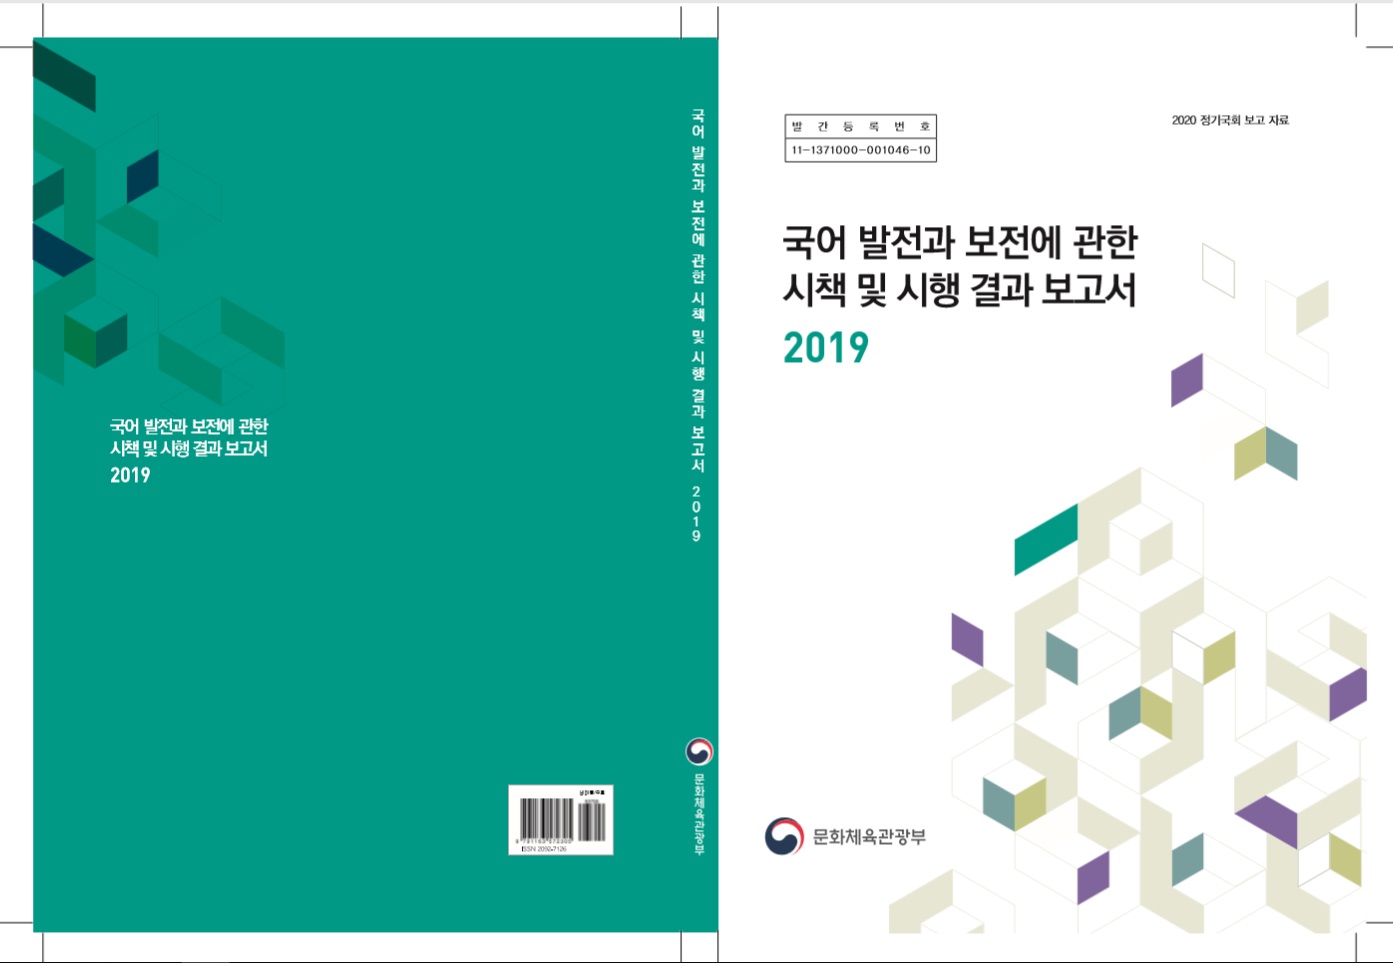 2019년 국어 발전과 보전에 관한 시책 및 시행결과보고서